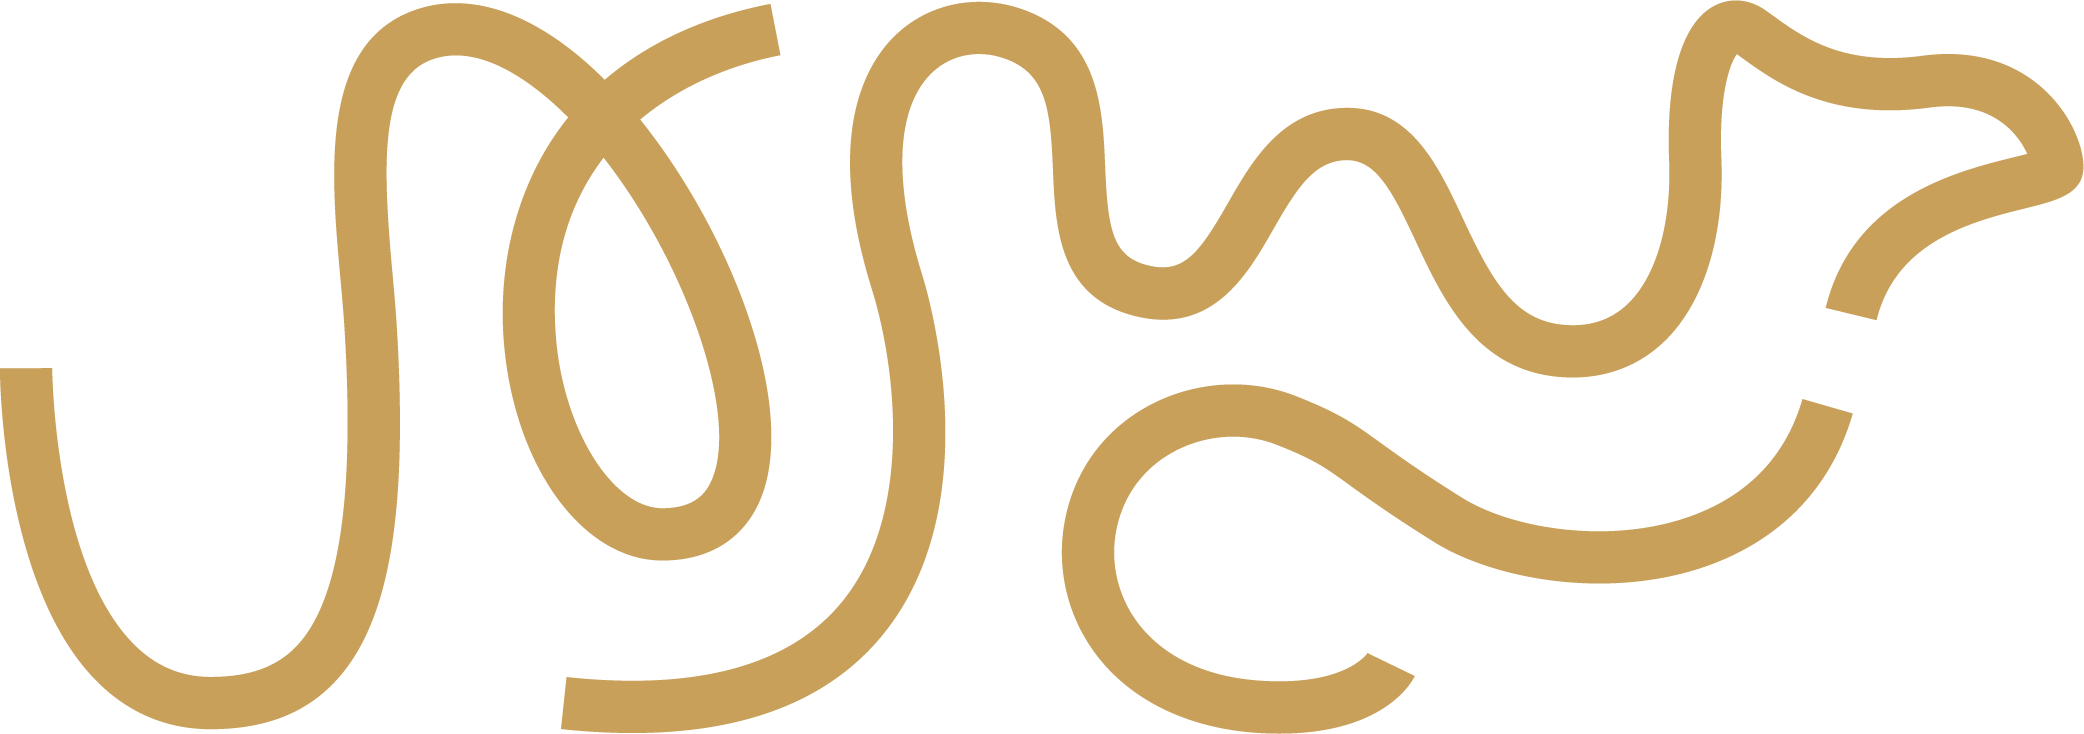 new golden camel logo